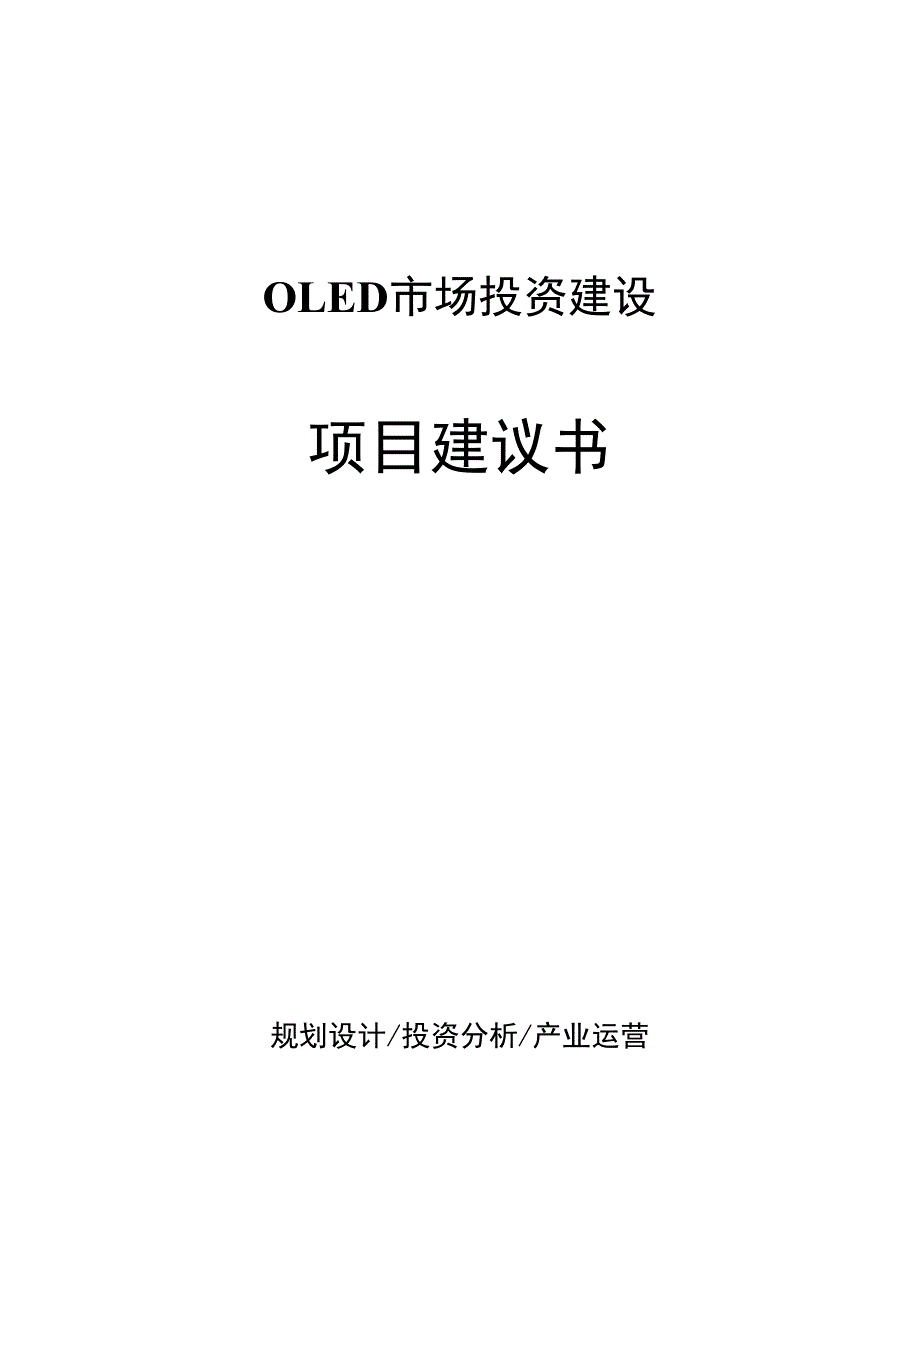 OLED市场投资建设项目建议书_第1页